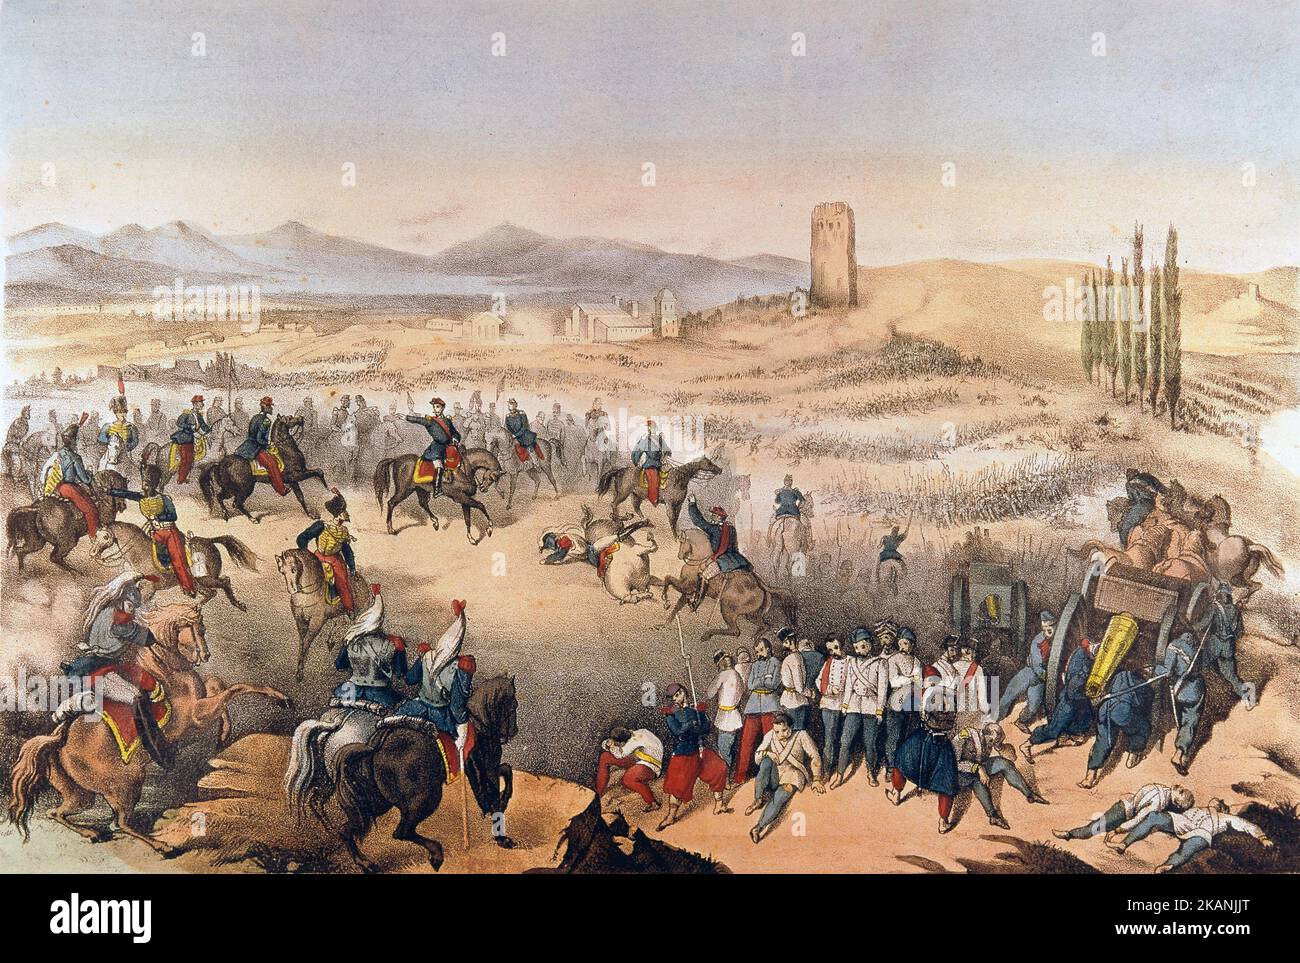 La bataille de Solferino (Italie) contre les Autrichiens en 1859. Estampe populaire du 19eme siecle. Stockfoto